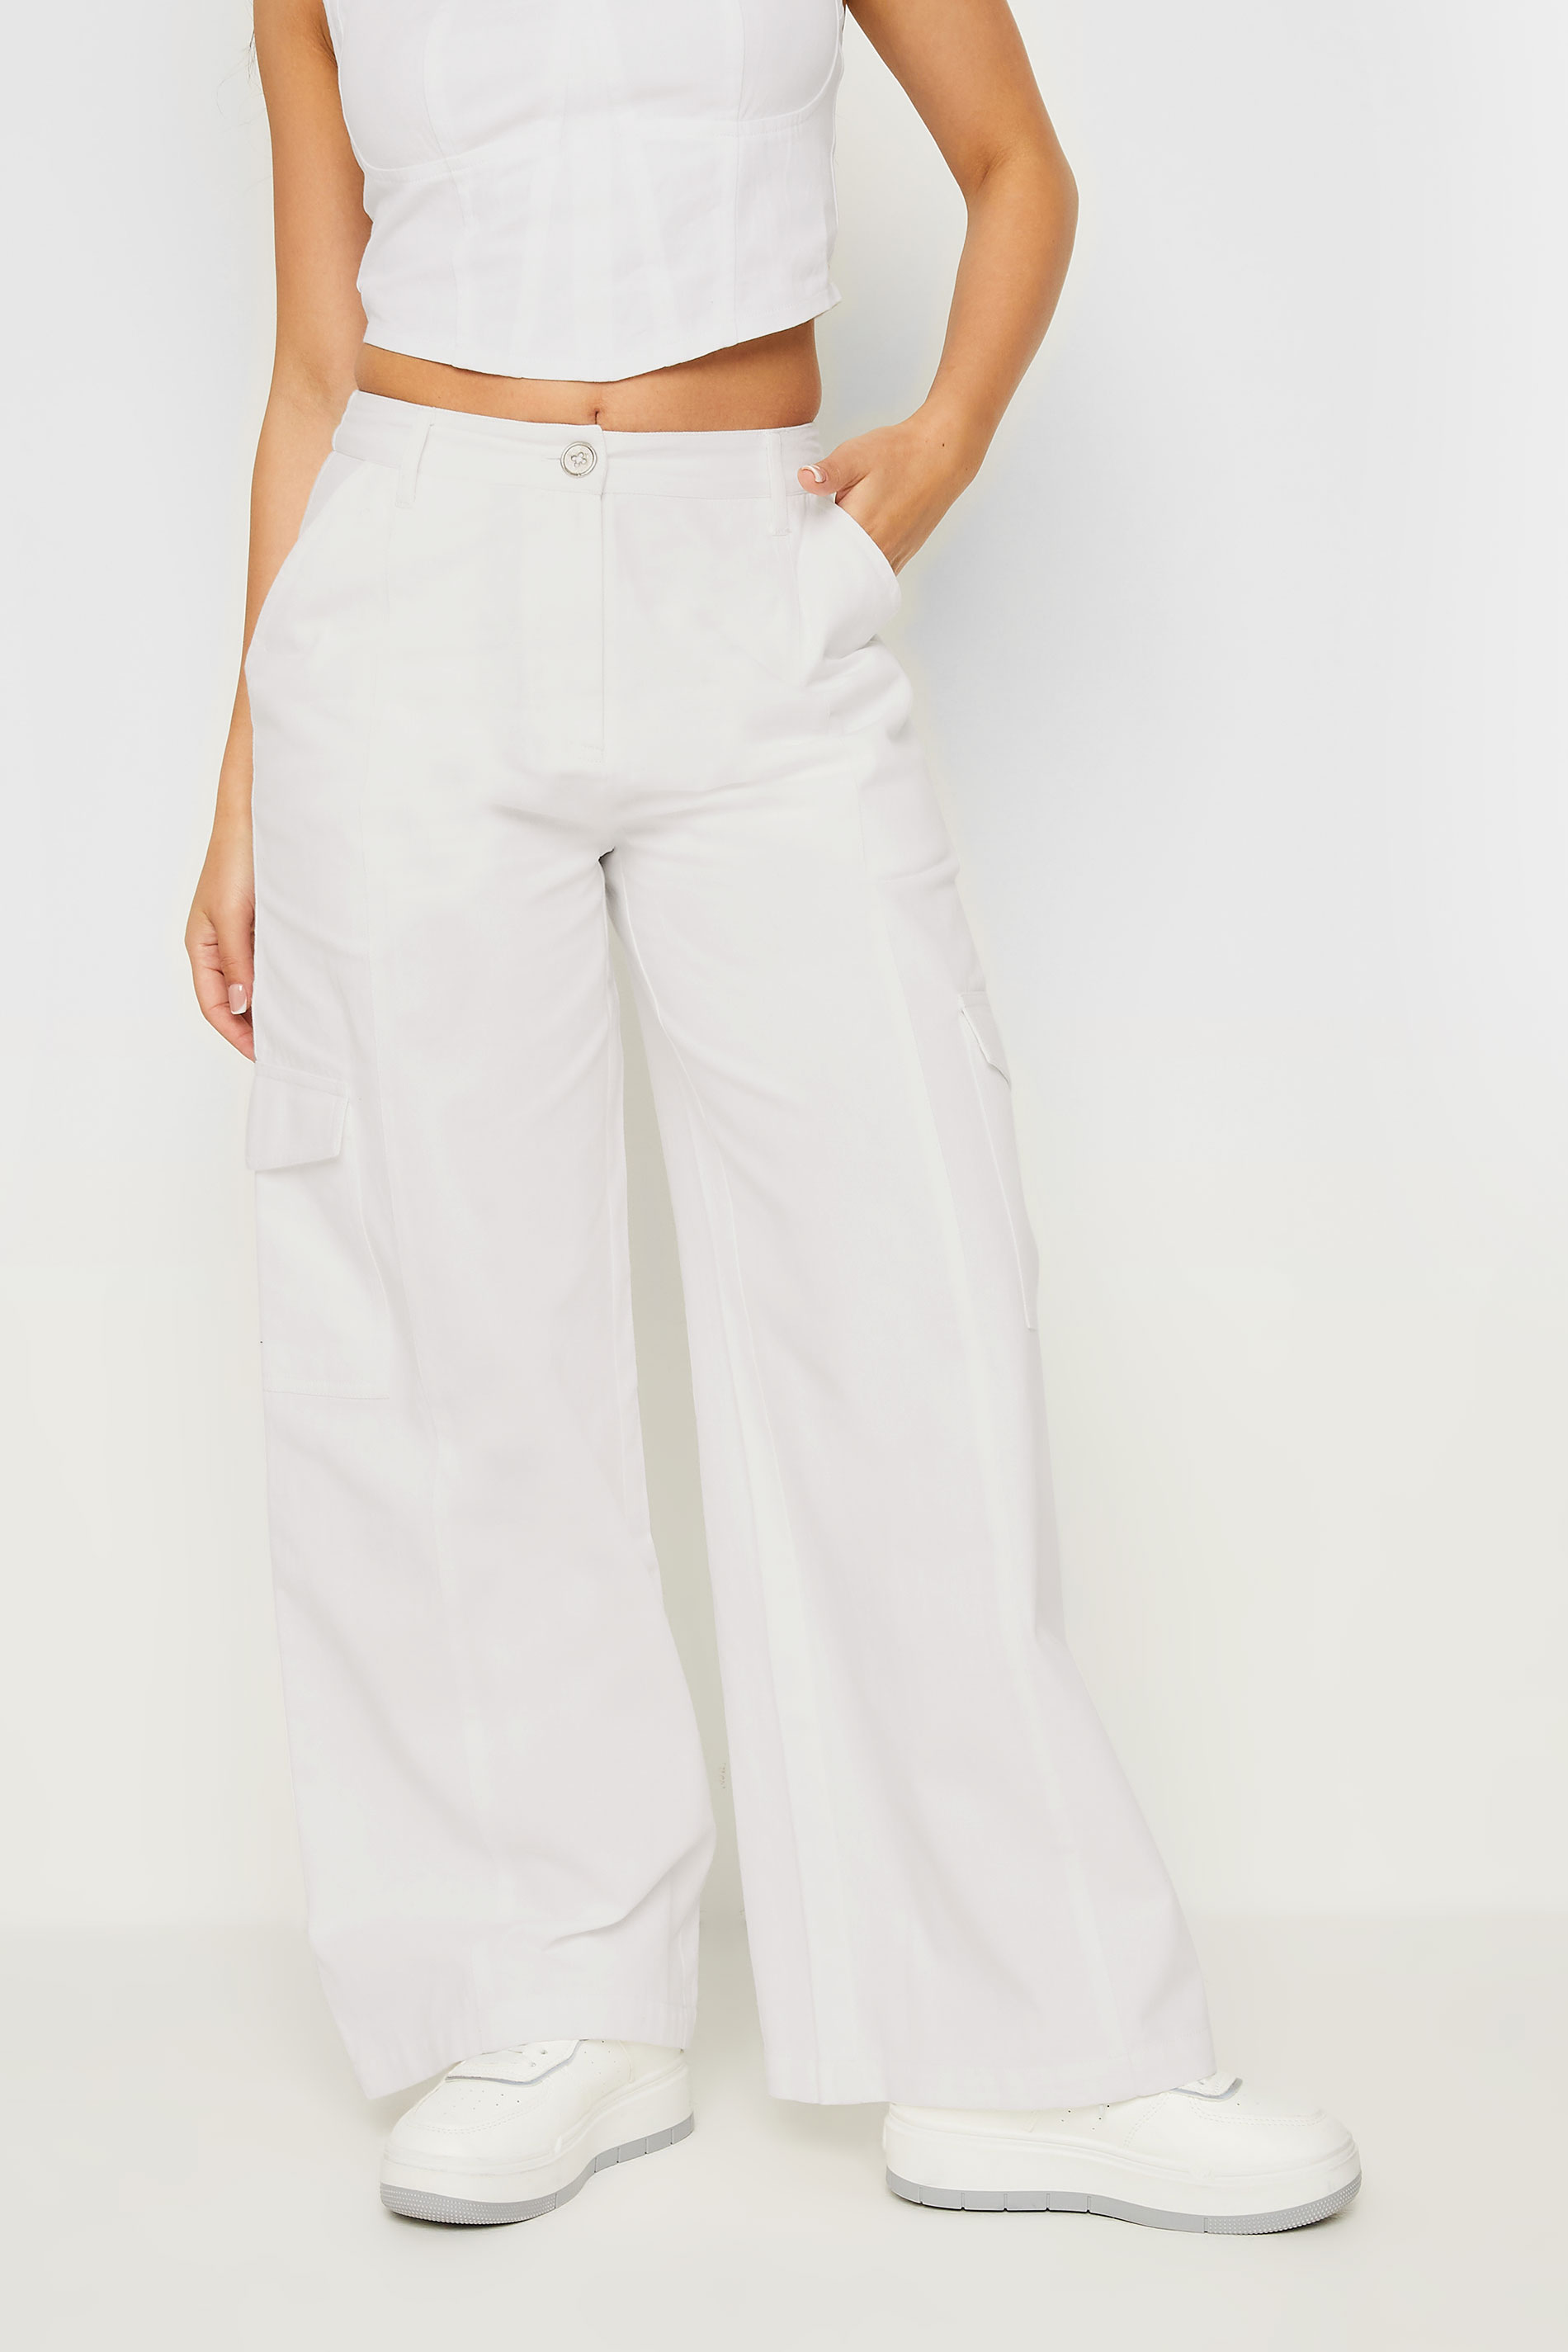 PixieGirl Petite Women's White Cargo Trousers | PixieGirl 2